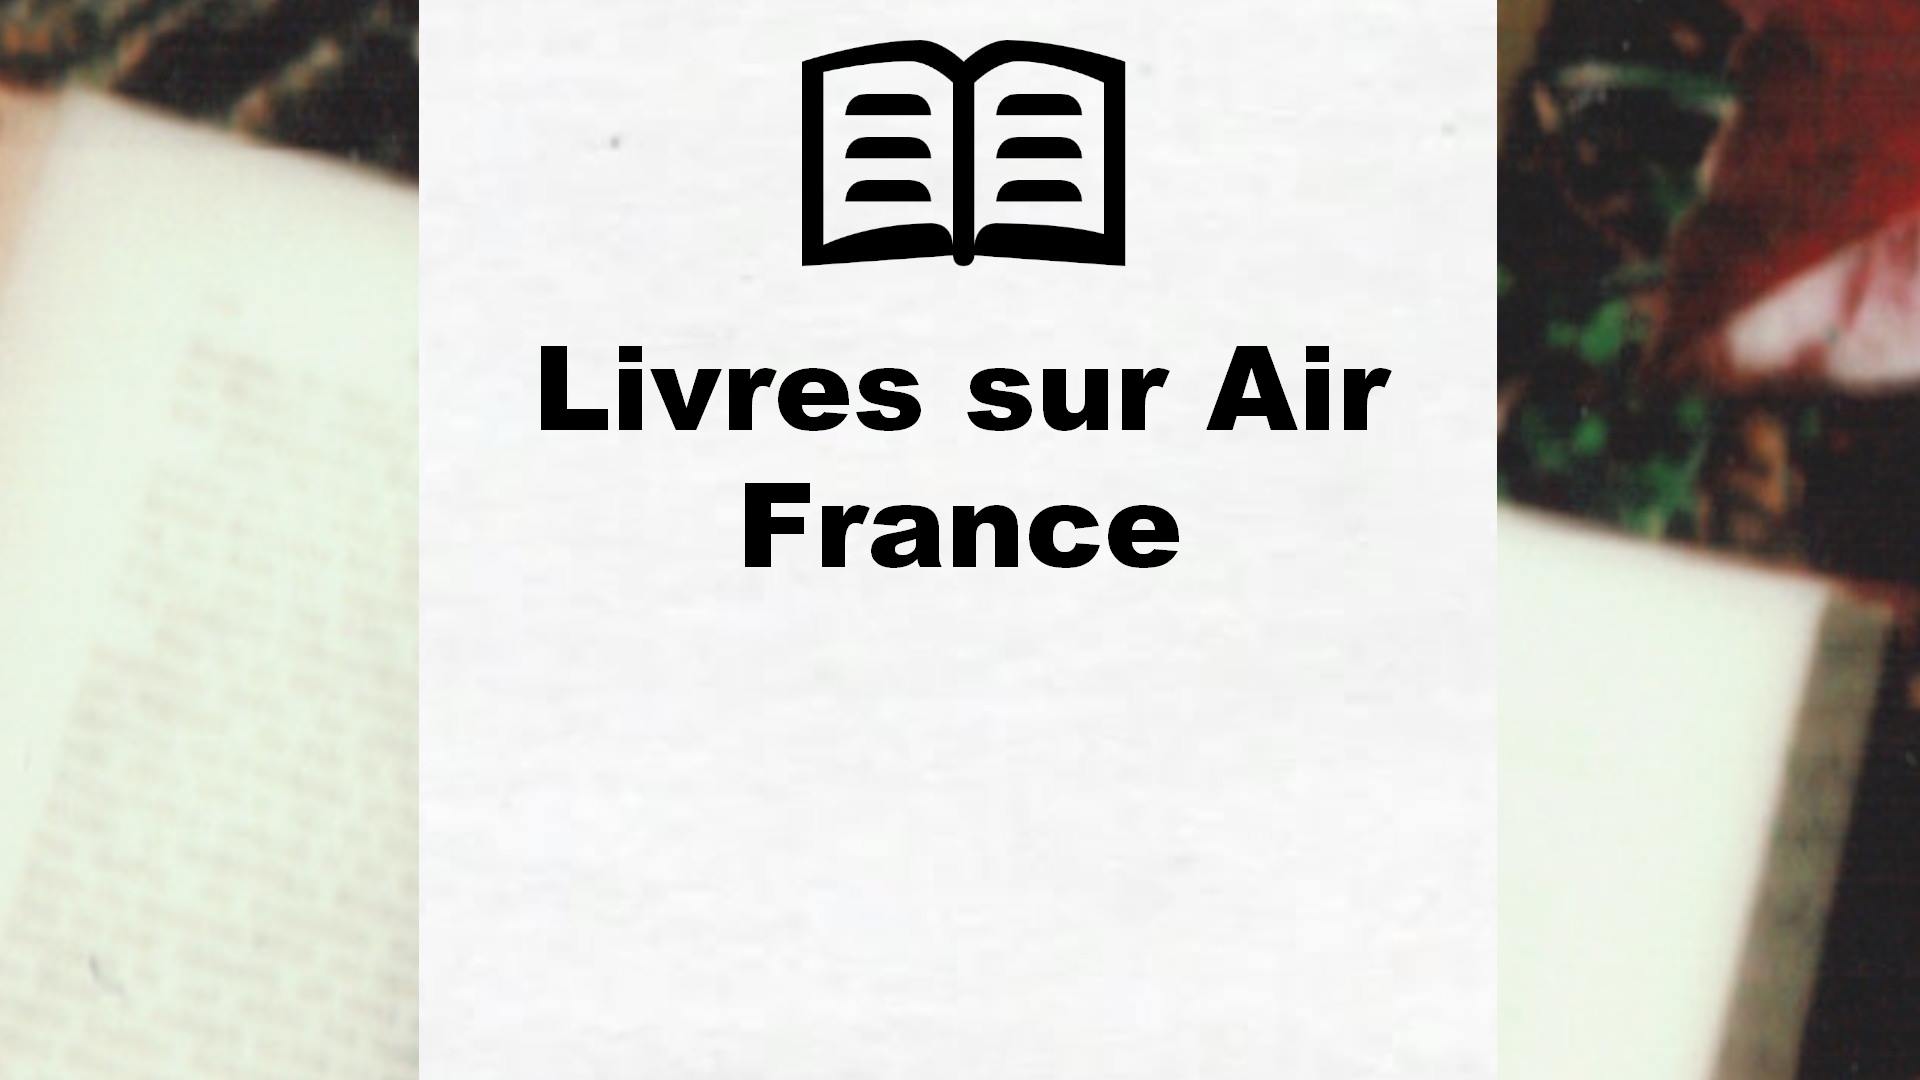 Livres sur Air France